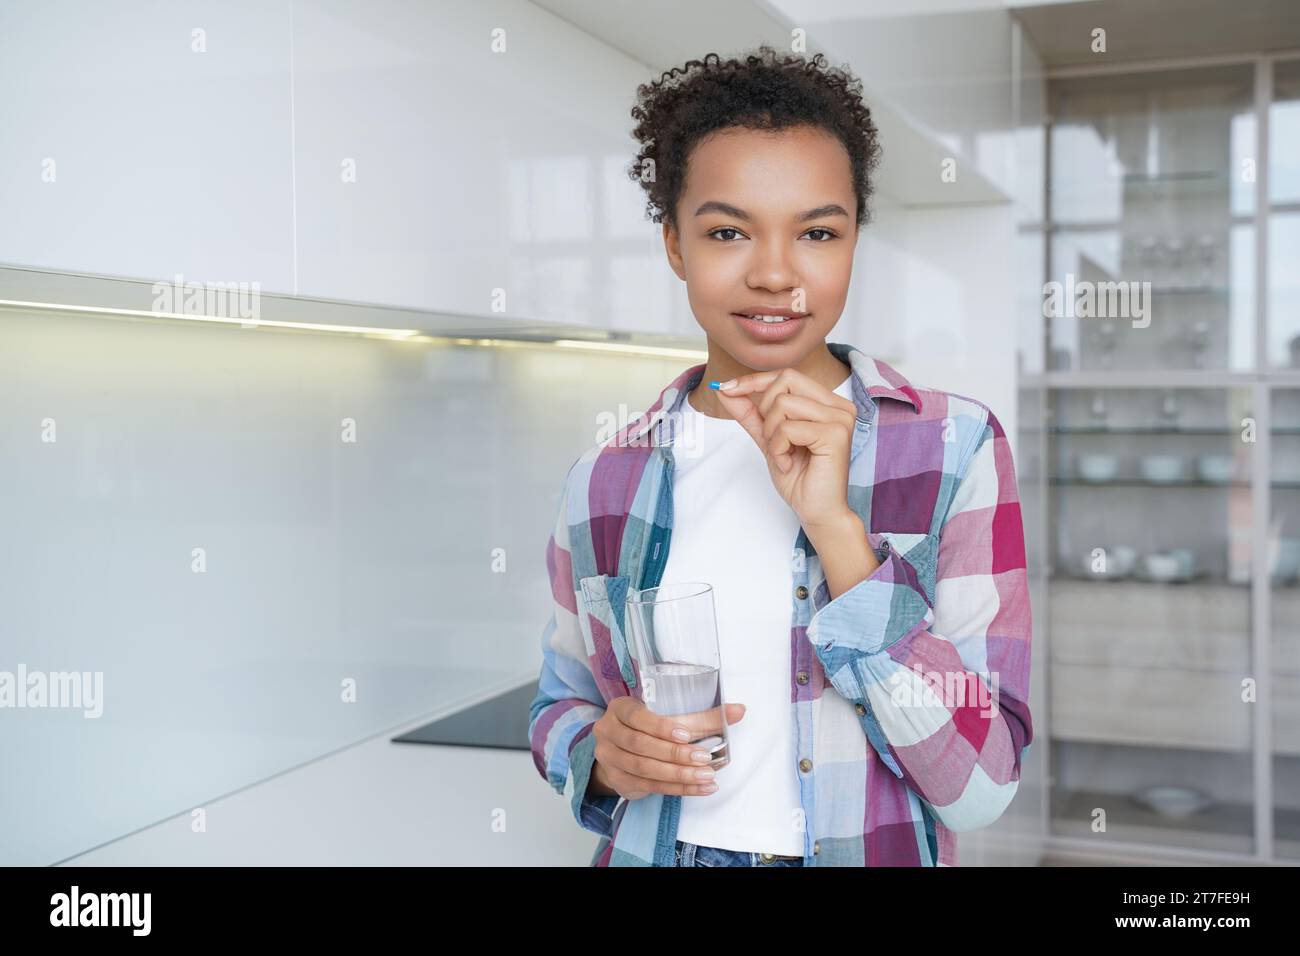 Giovane ragazza che tiene un bicchiere d'acqua in una mano e una pillola (farmaco) nell'altra, con uno sfondo luminoso e moderno della cucina Foto Stock